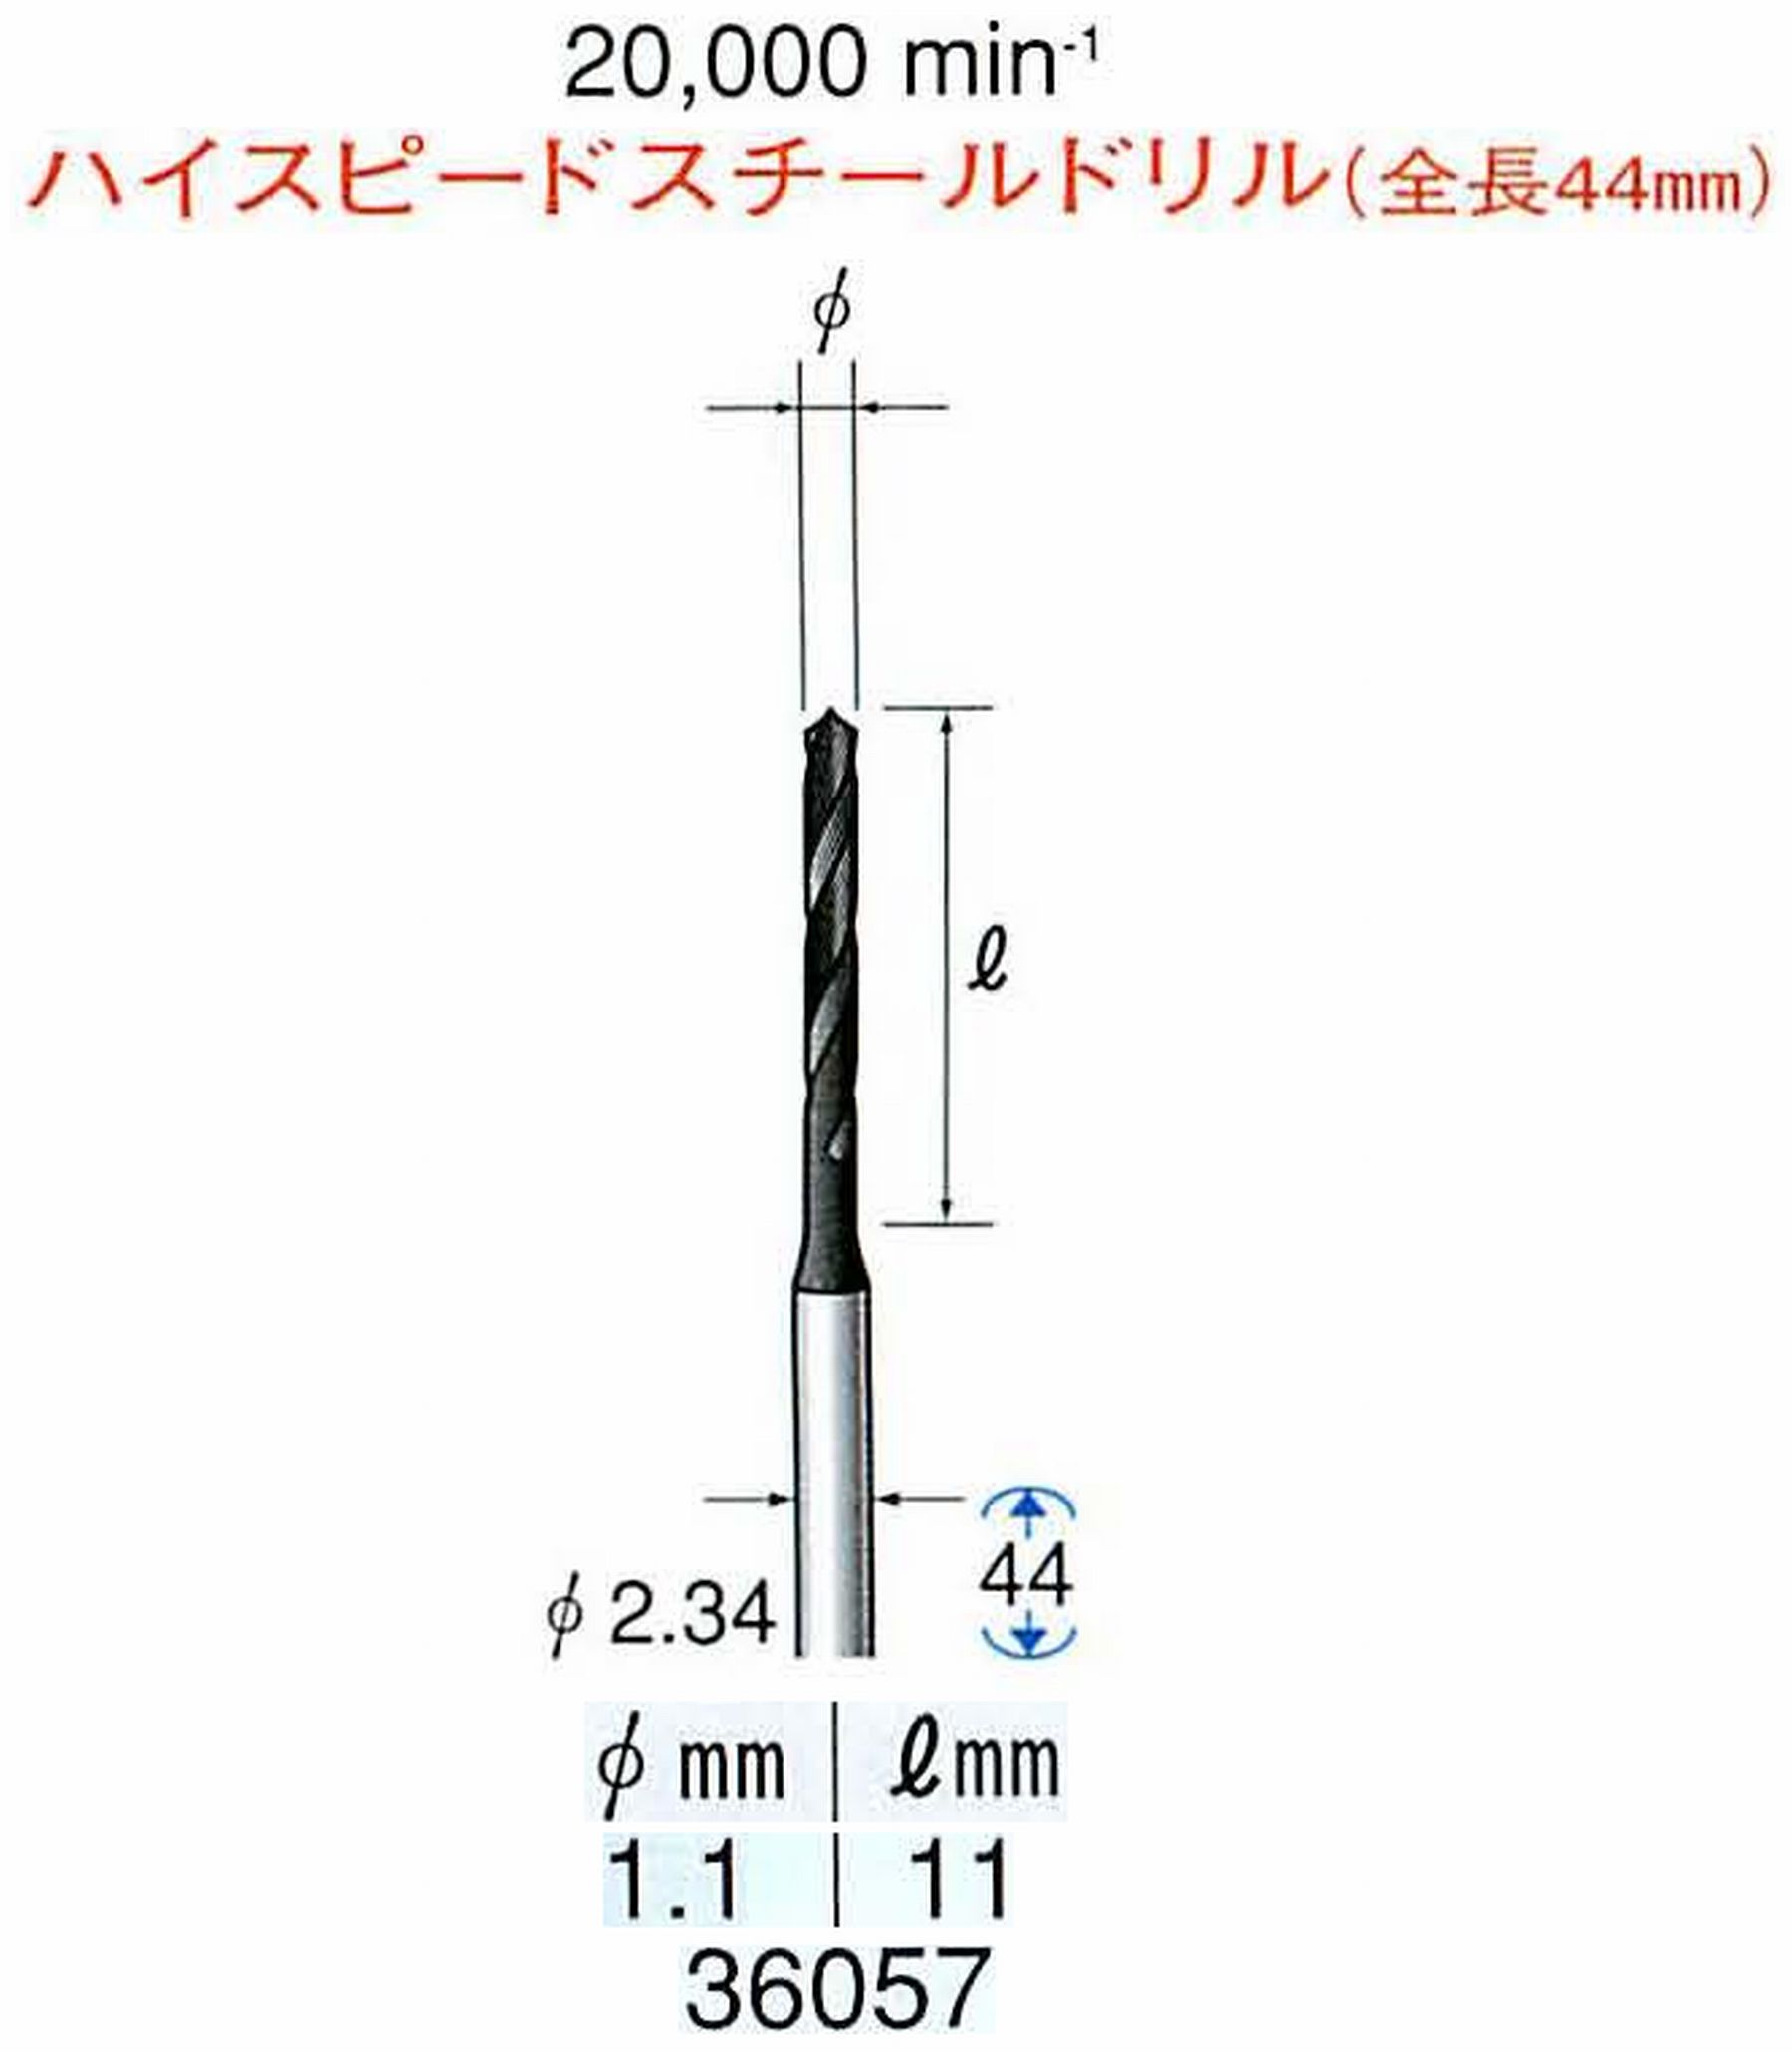 ナカニシ/NAKANISHI ツイストドリル ハイスピードスチール(H.S.S)ドリル(全長44mm) 軸径(シャンク) φ2.34mm 36057